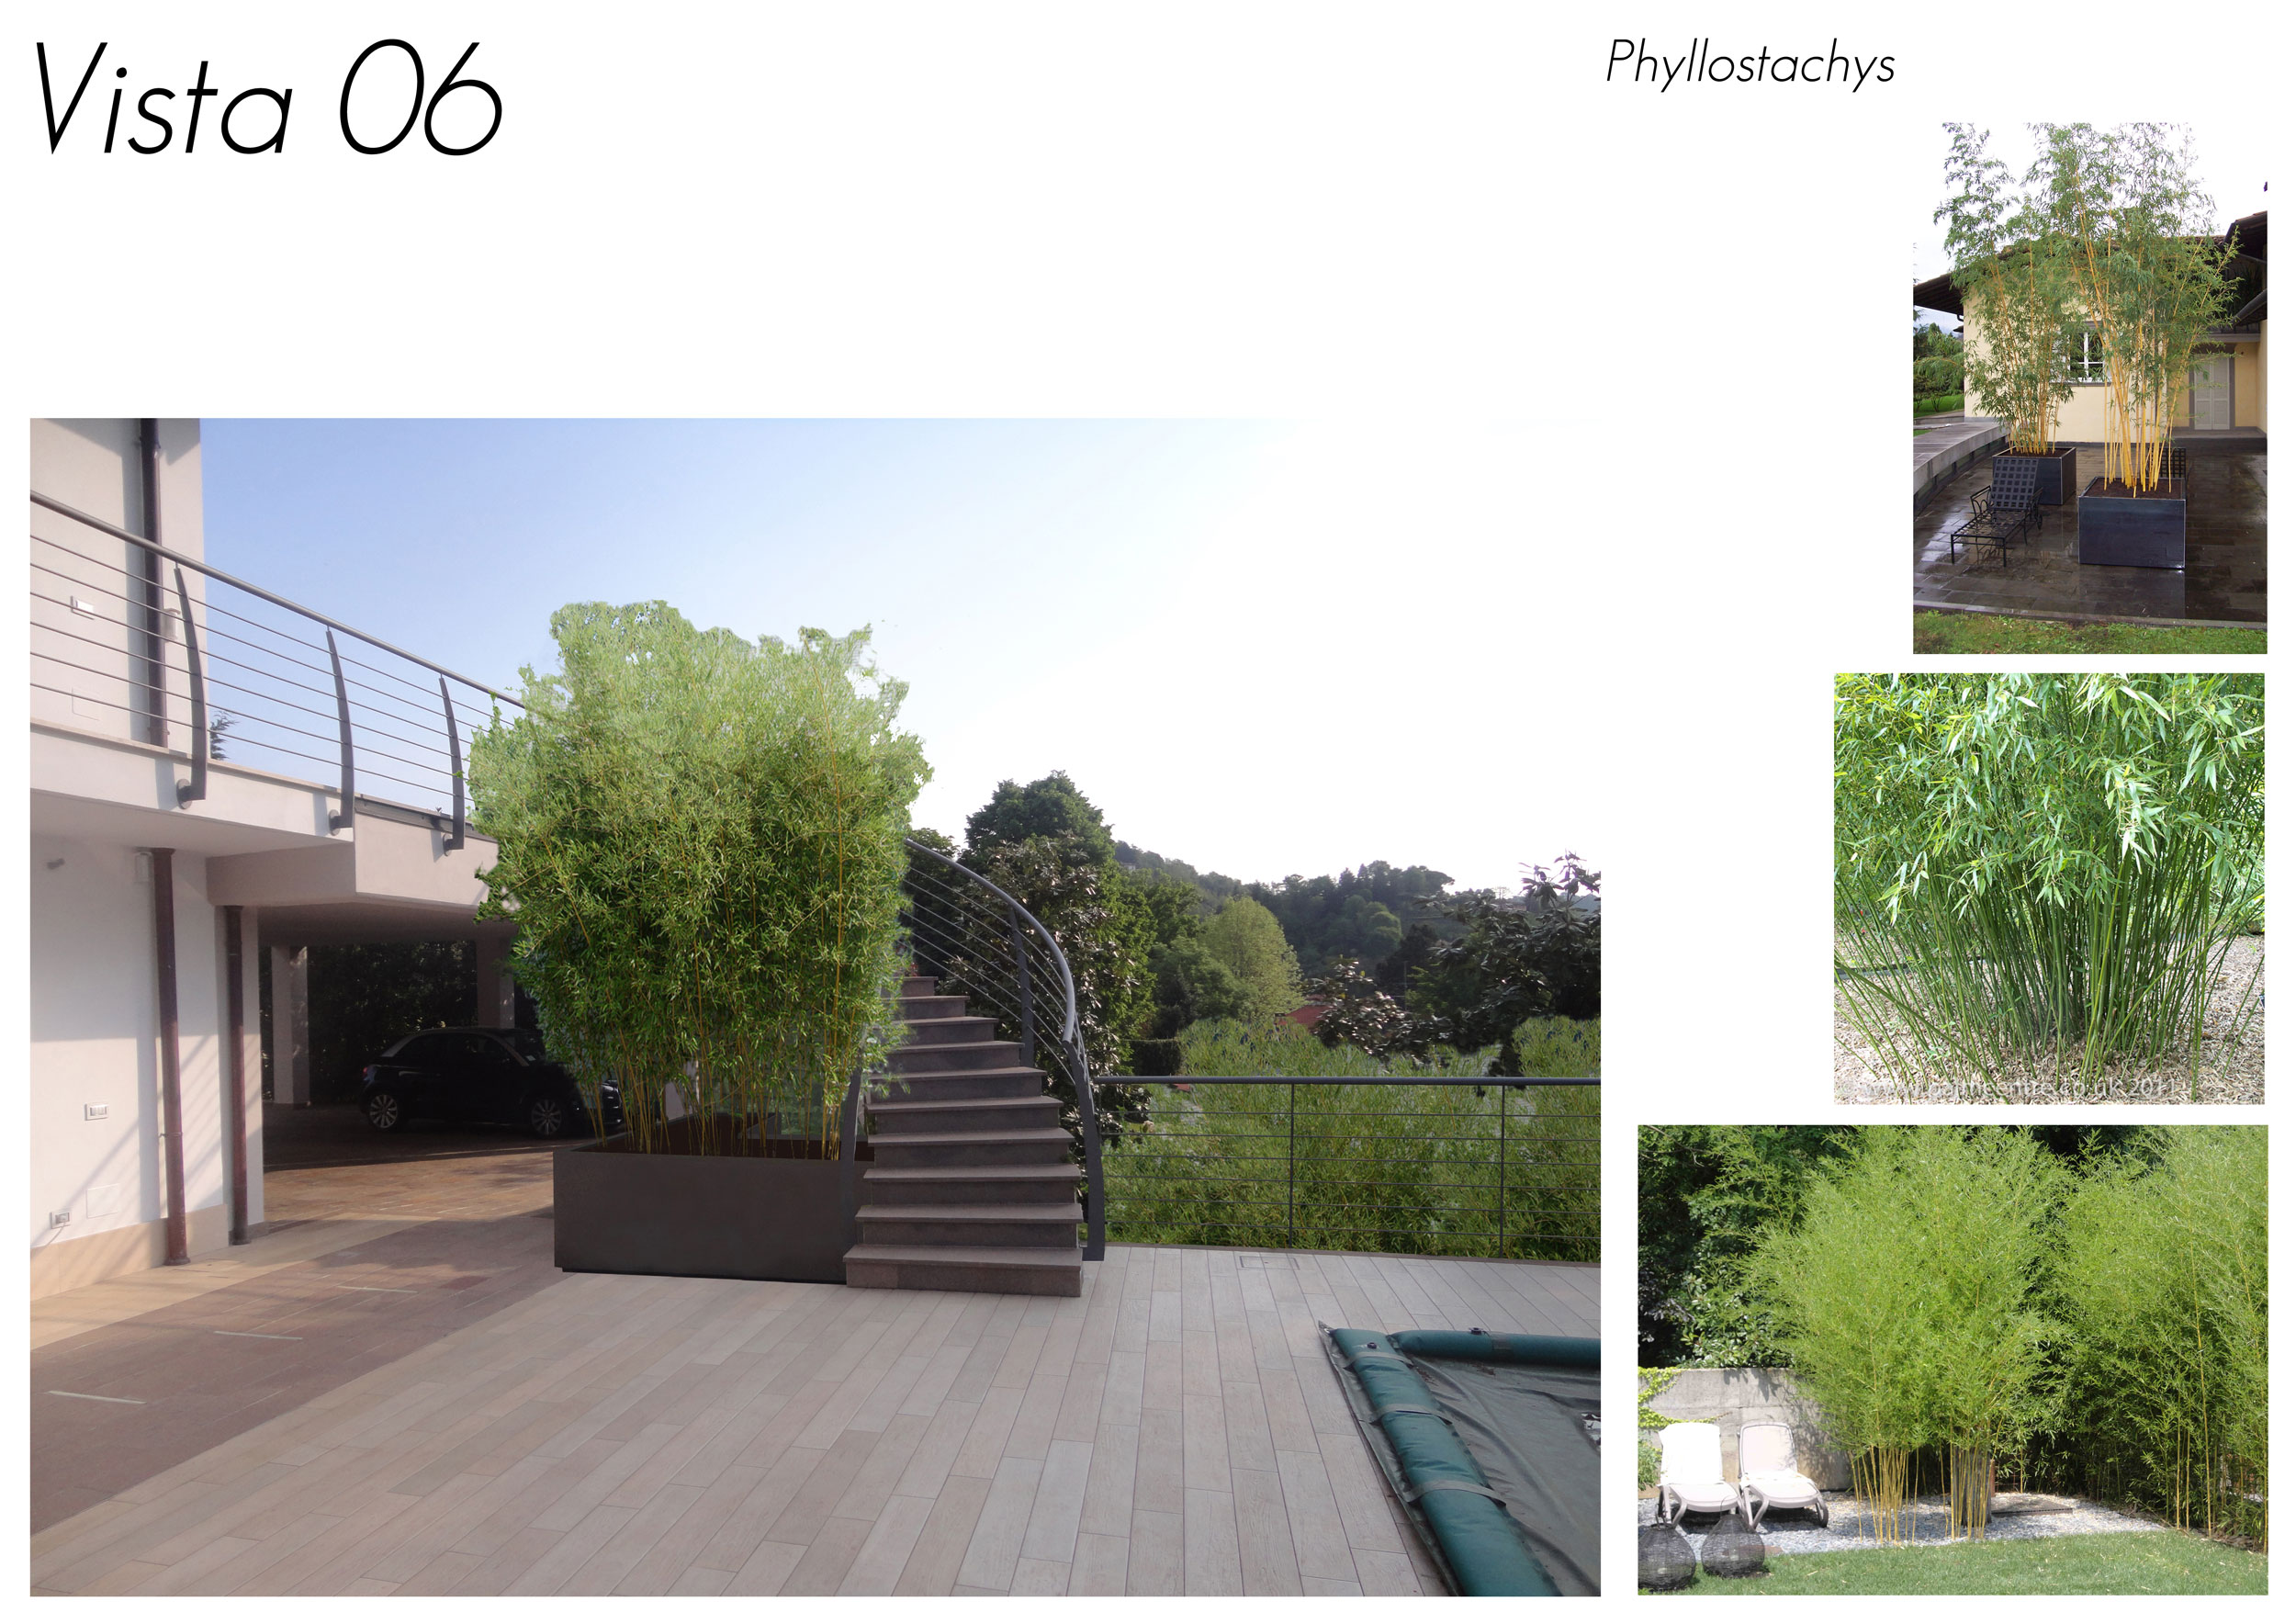 Phyllostachys, fioriere per bambù, spazio esterno, area relax, solarium